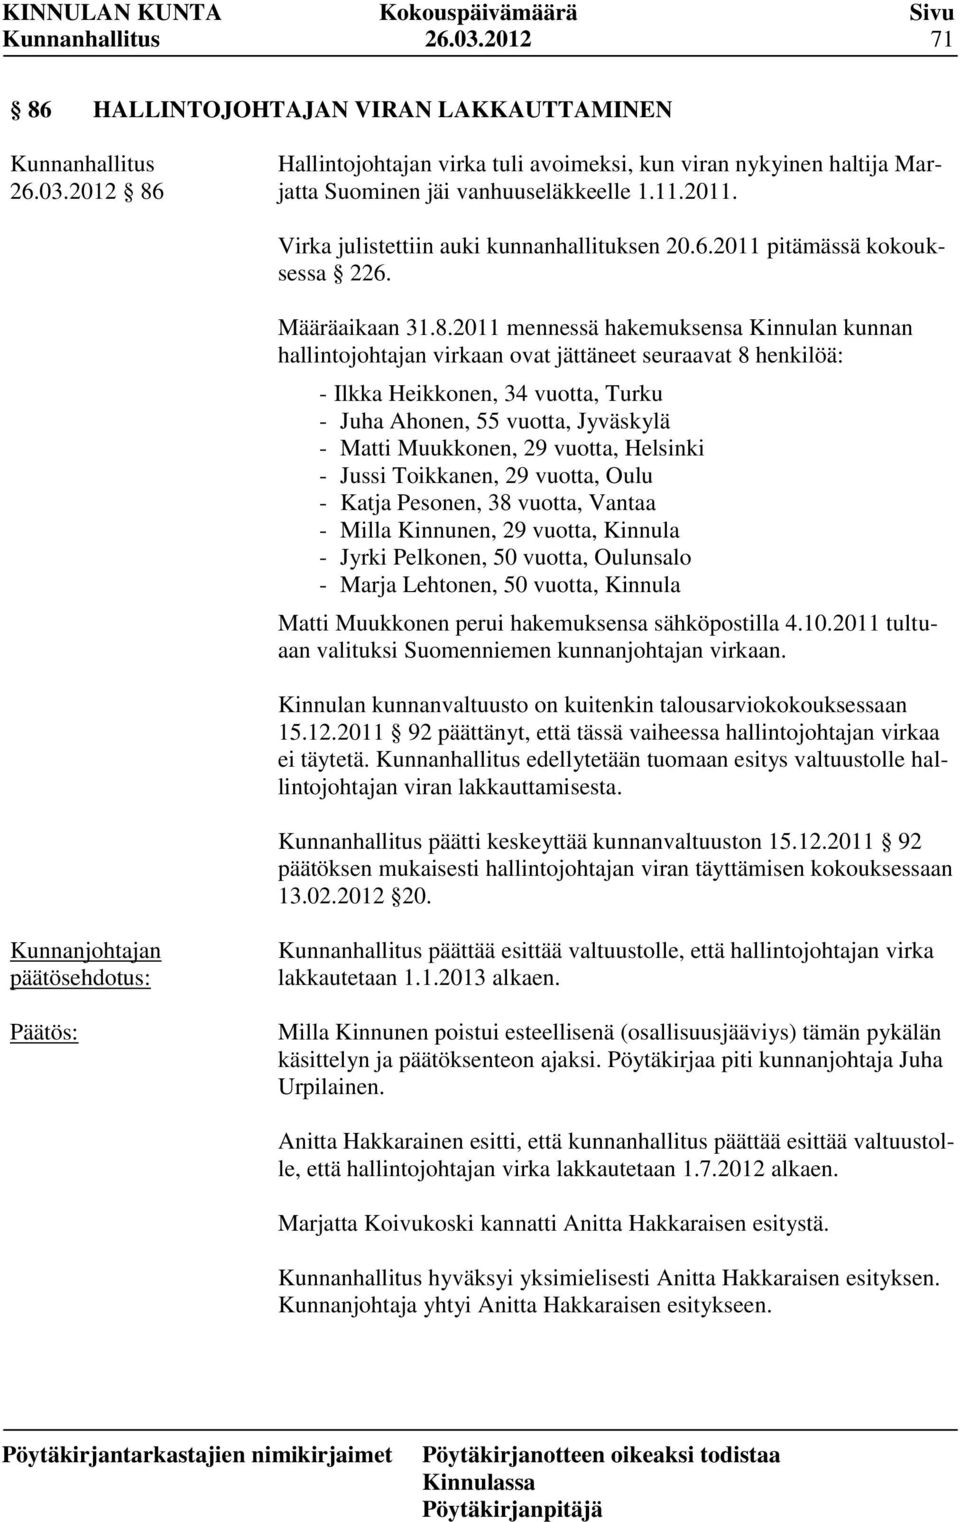 2011 mennessä hakemuksensa Kinnulan kunnan hallintojohtajan virkaan ovat jättäneet seuraavat 8 henkilöä: - Ilkka Heikkonen, 34 vuotta, Turku - Juha Ahonen, 55 vuotta, Jyväskylä - Matti Muukkonen, 29